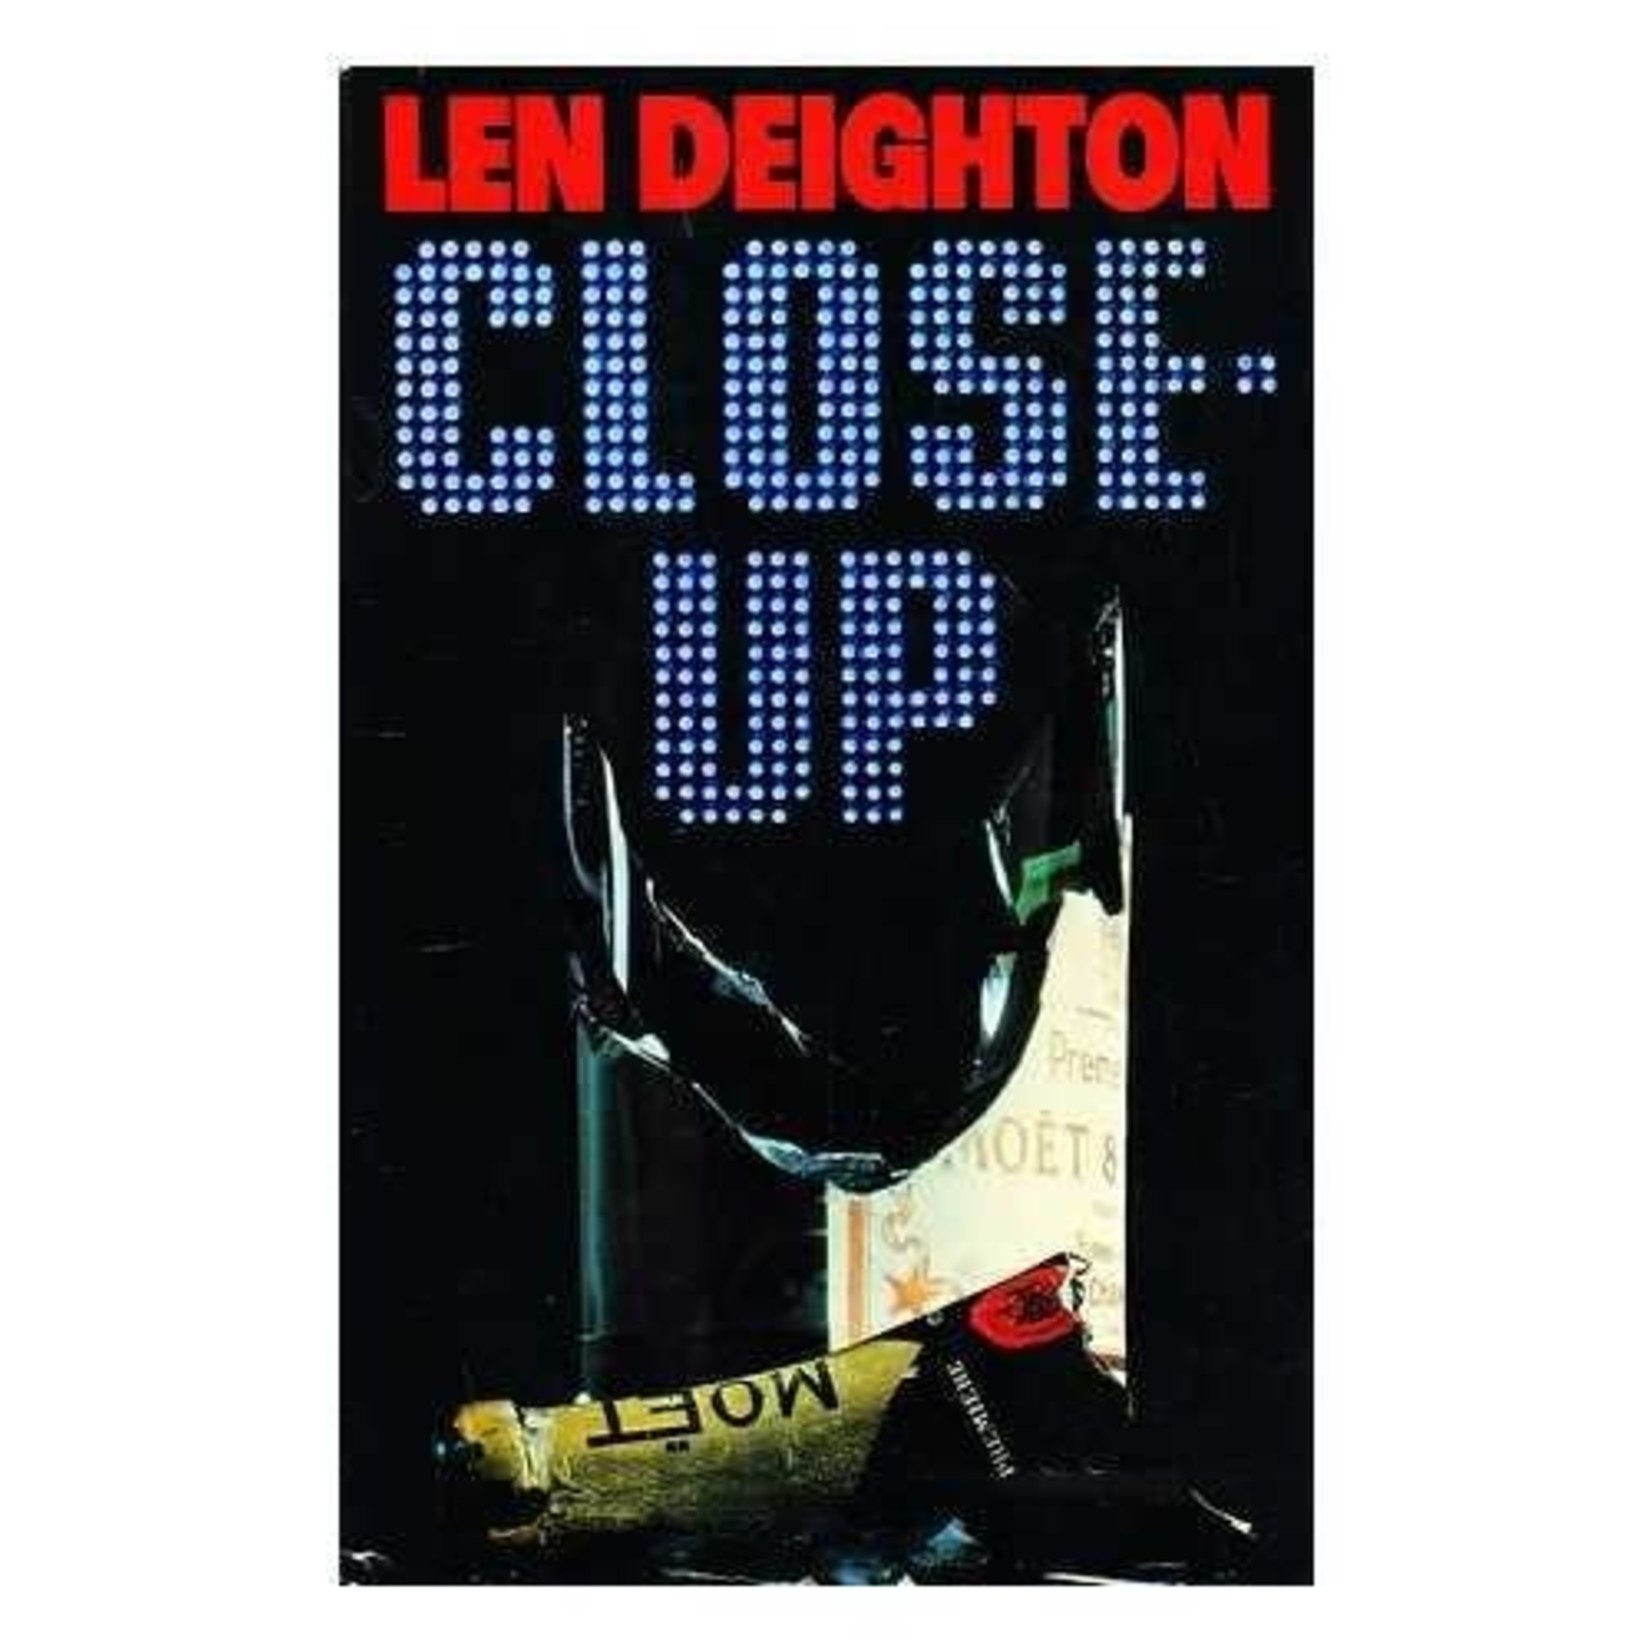 Deighton, Len Deighton, Len - Close-Up